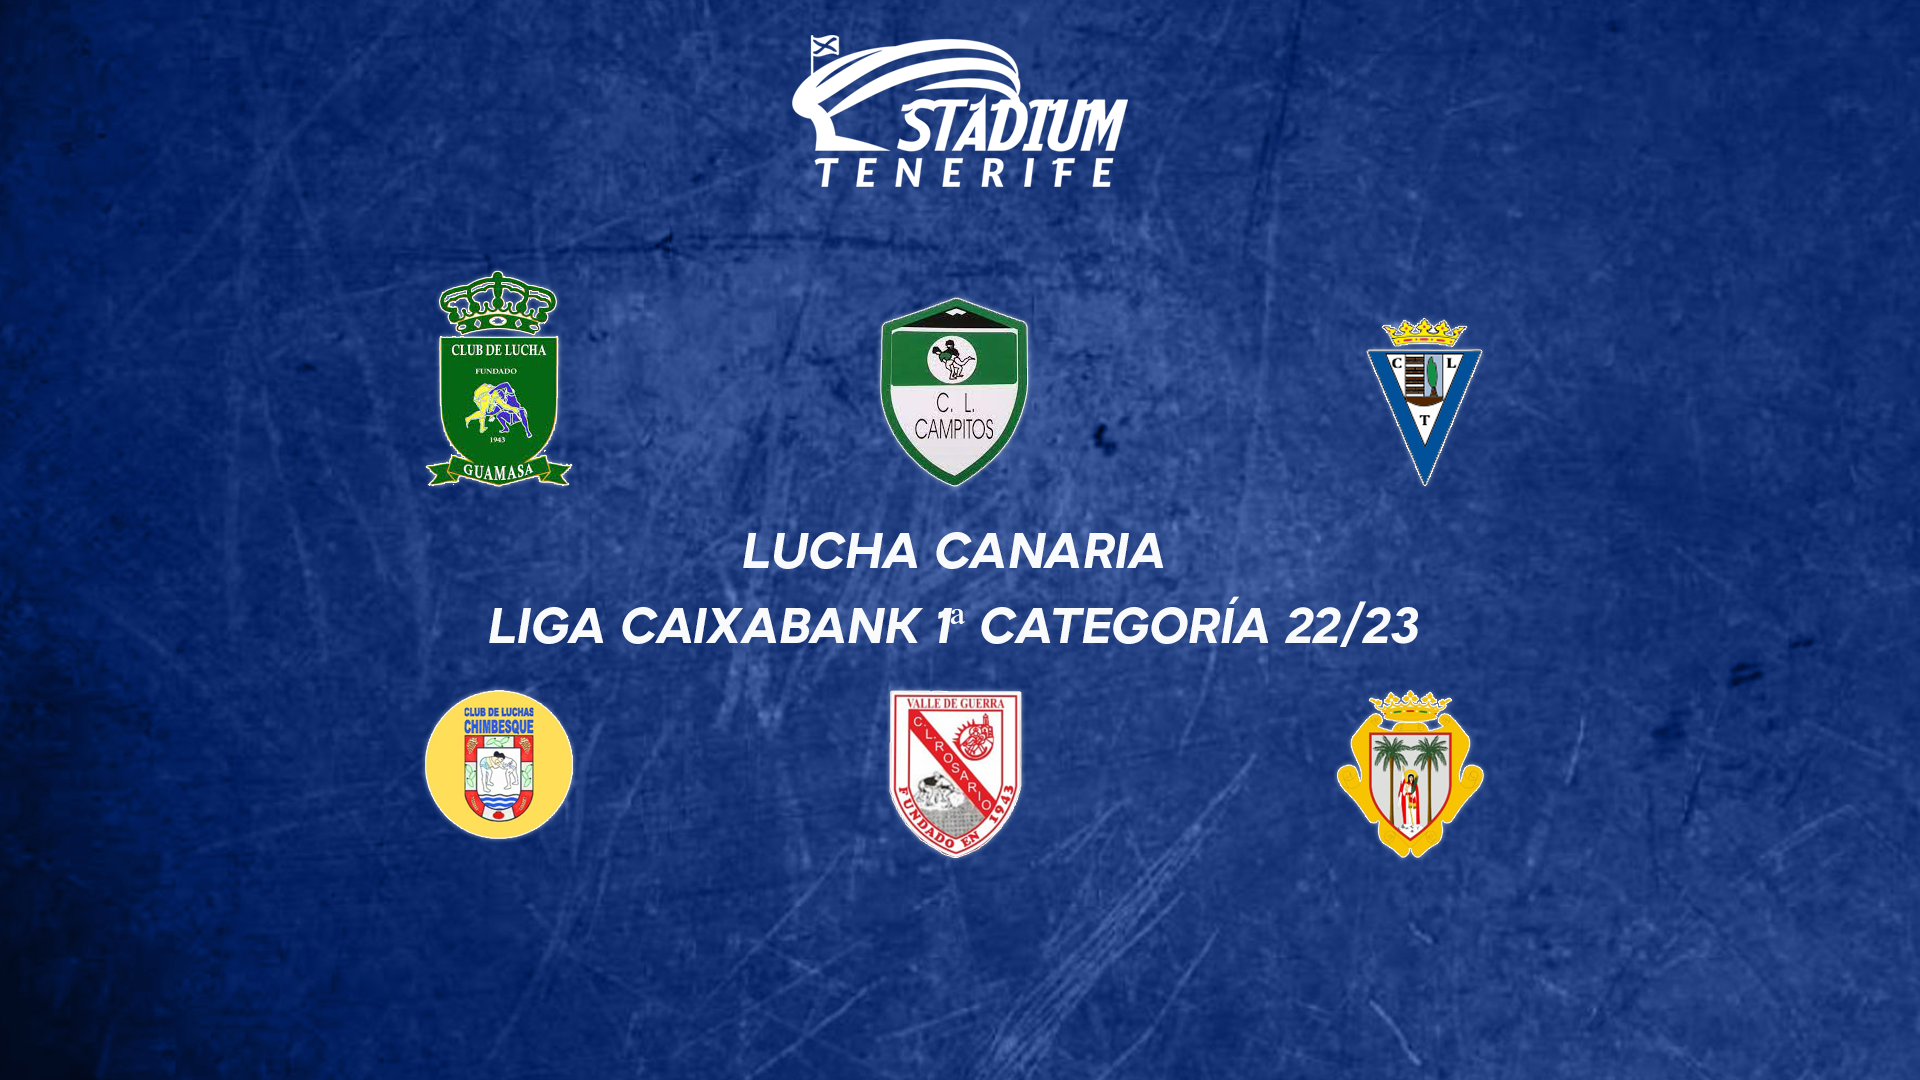 PREVIA | 7ª Jornada de la Liga CaixaBank de Lucha Canaria (9-10 de diciembre)